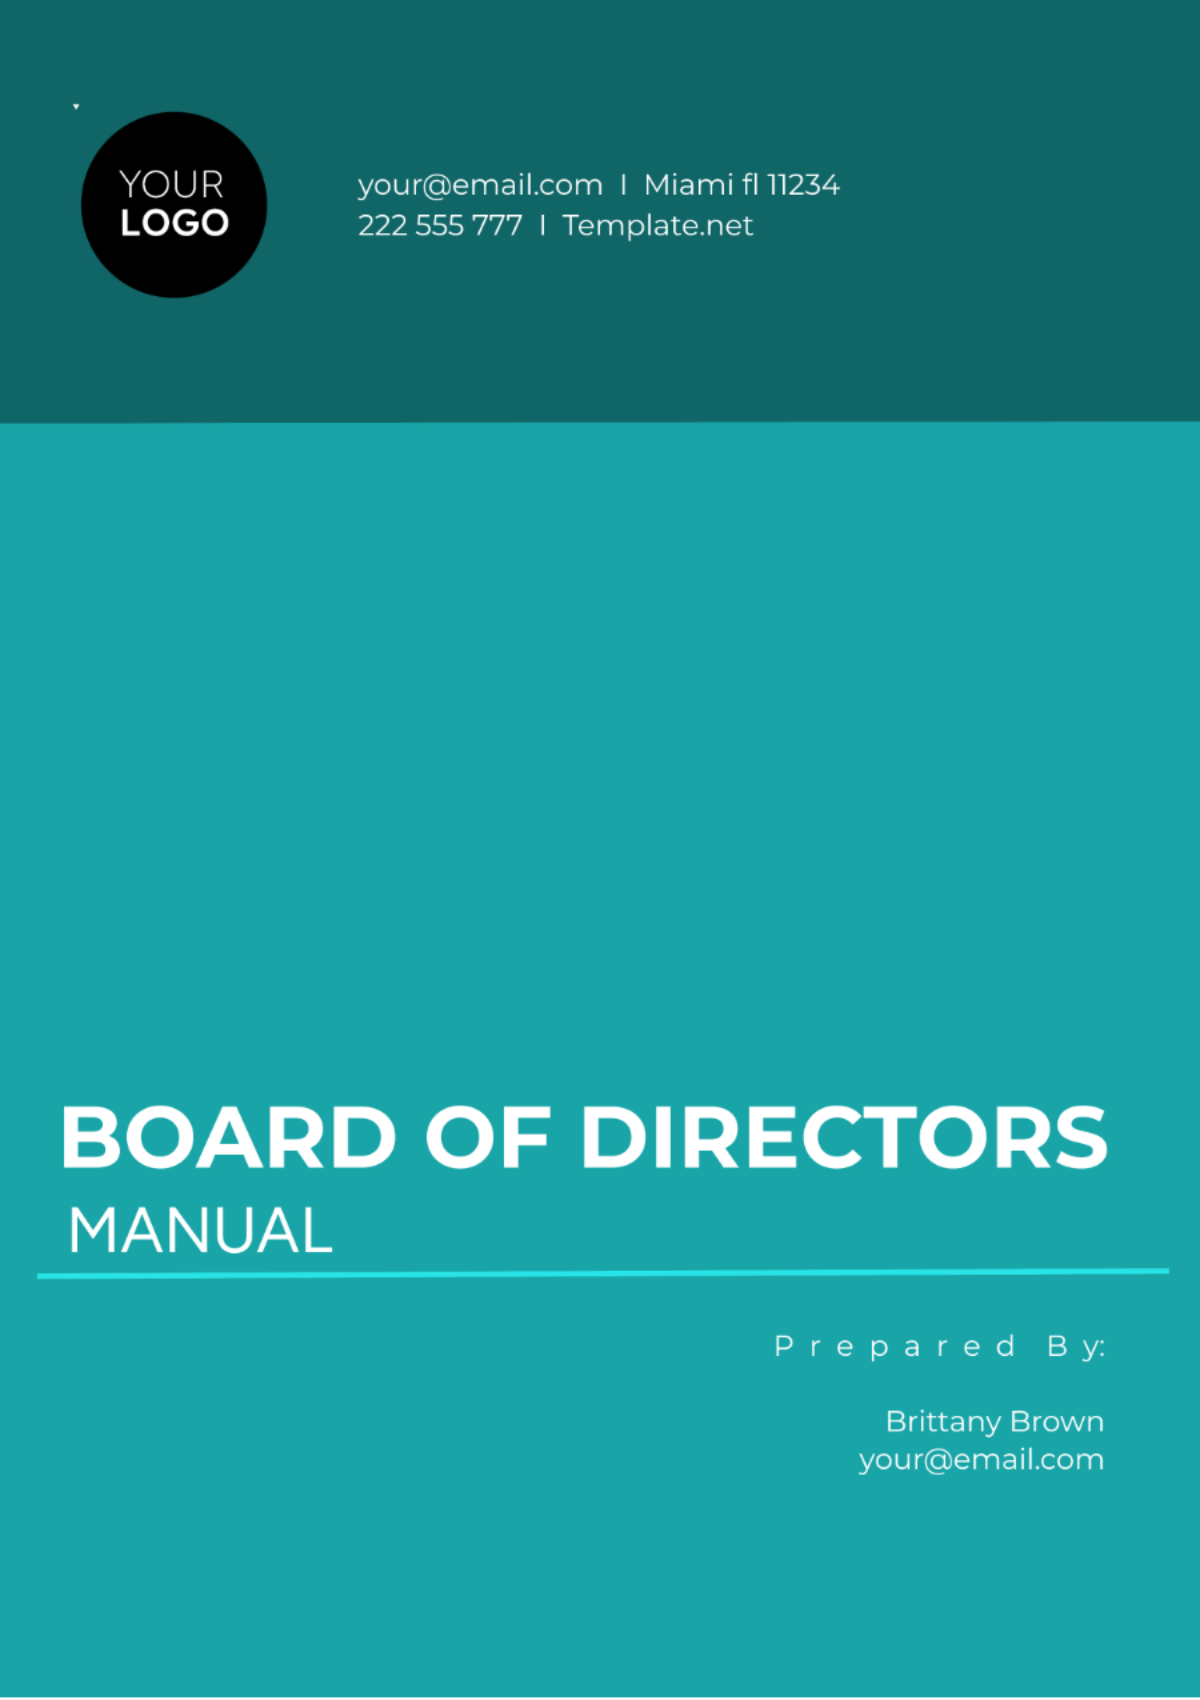 Board of Directors Manual Template